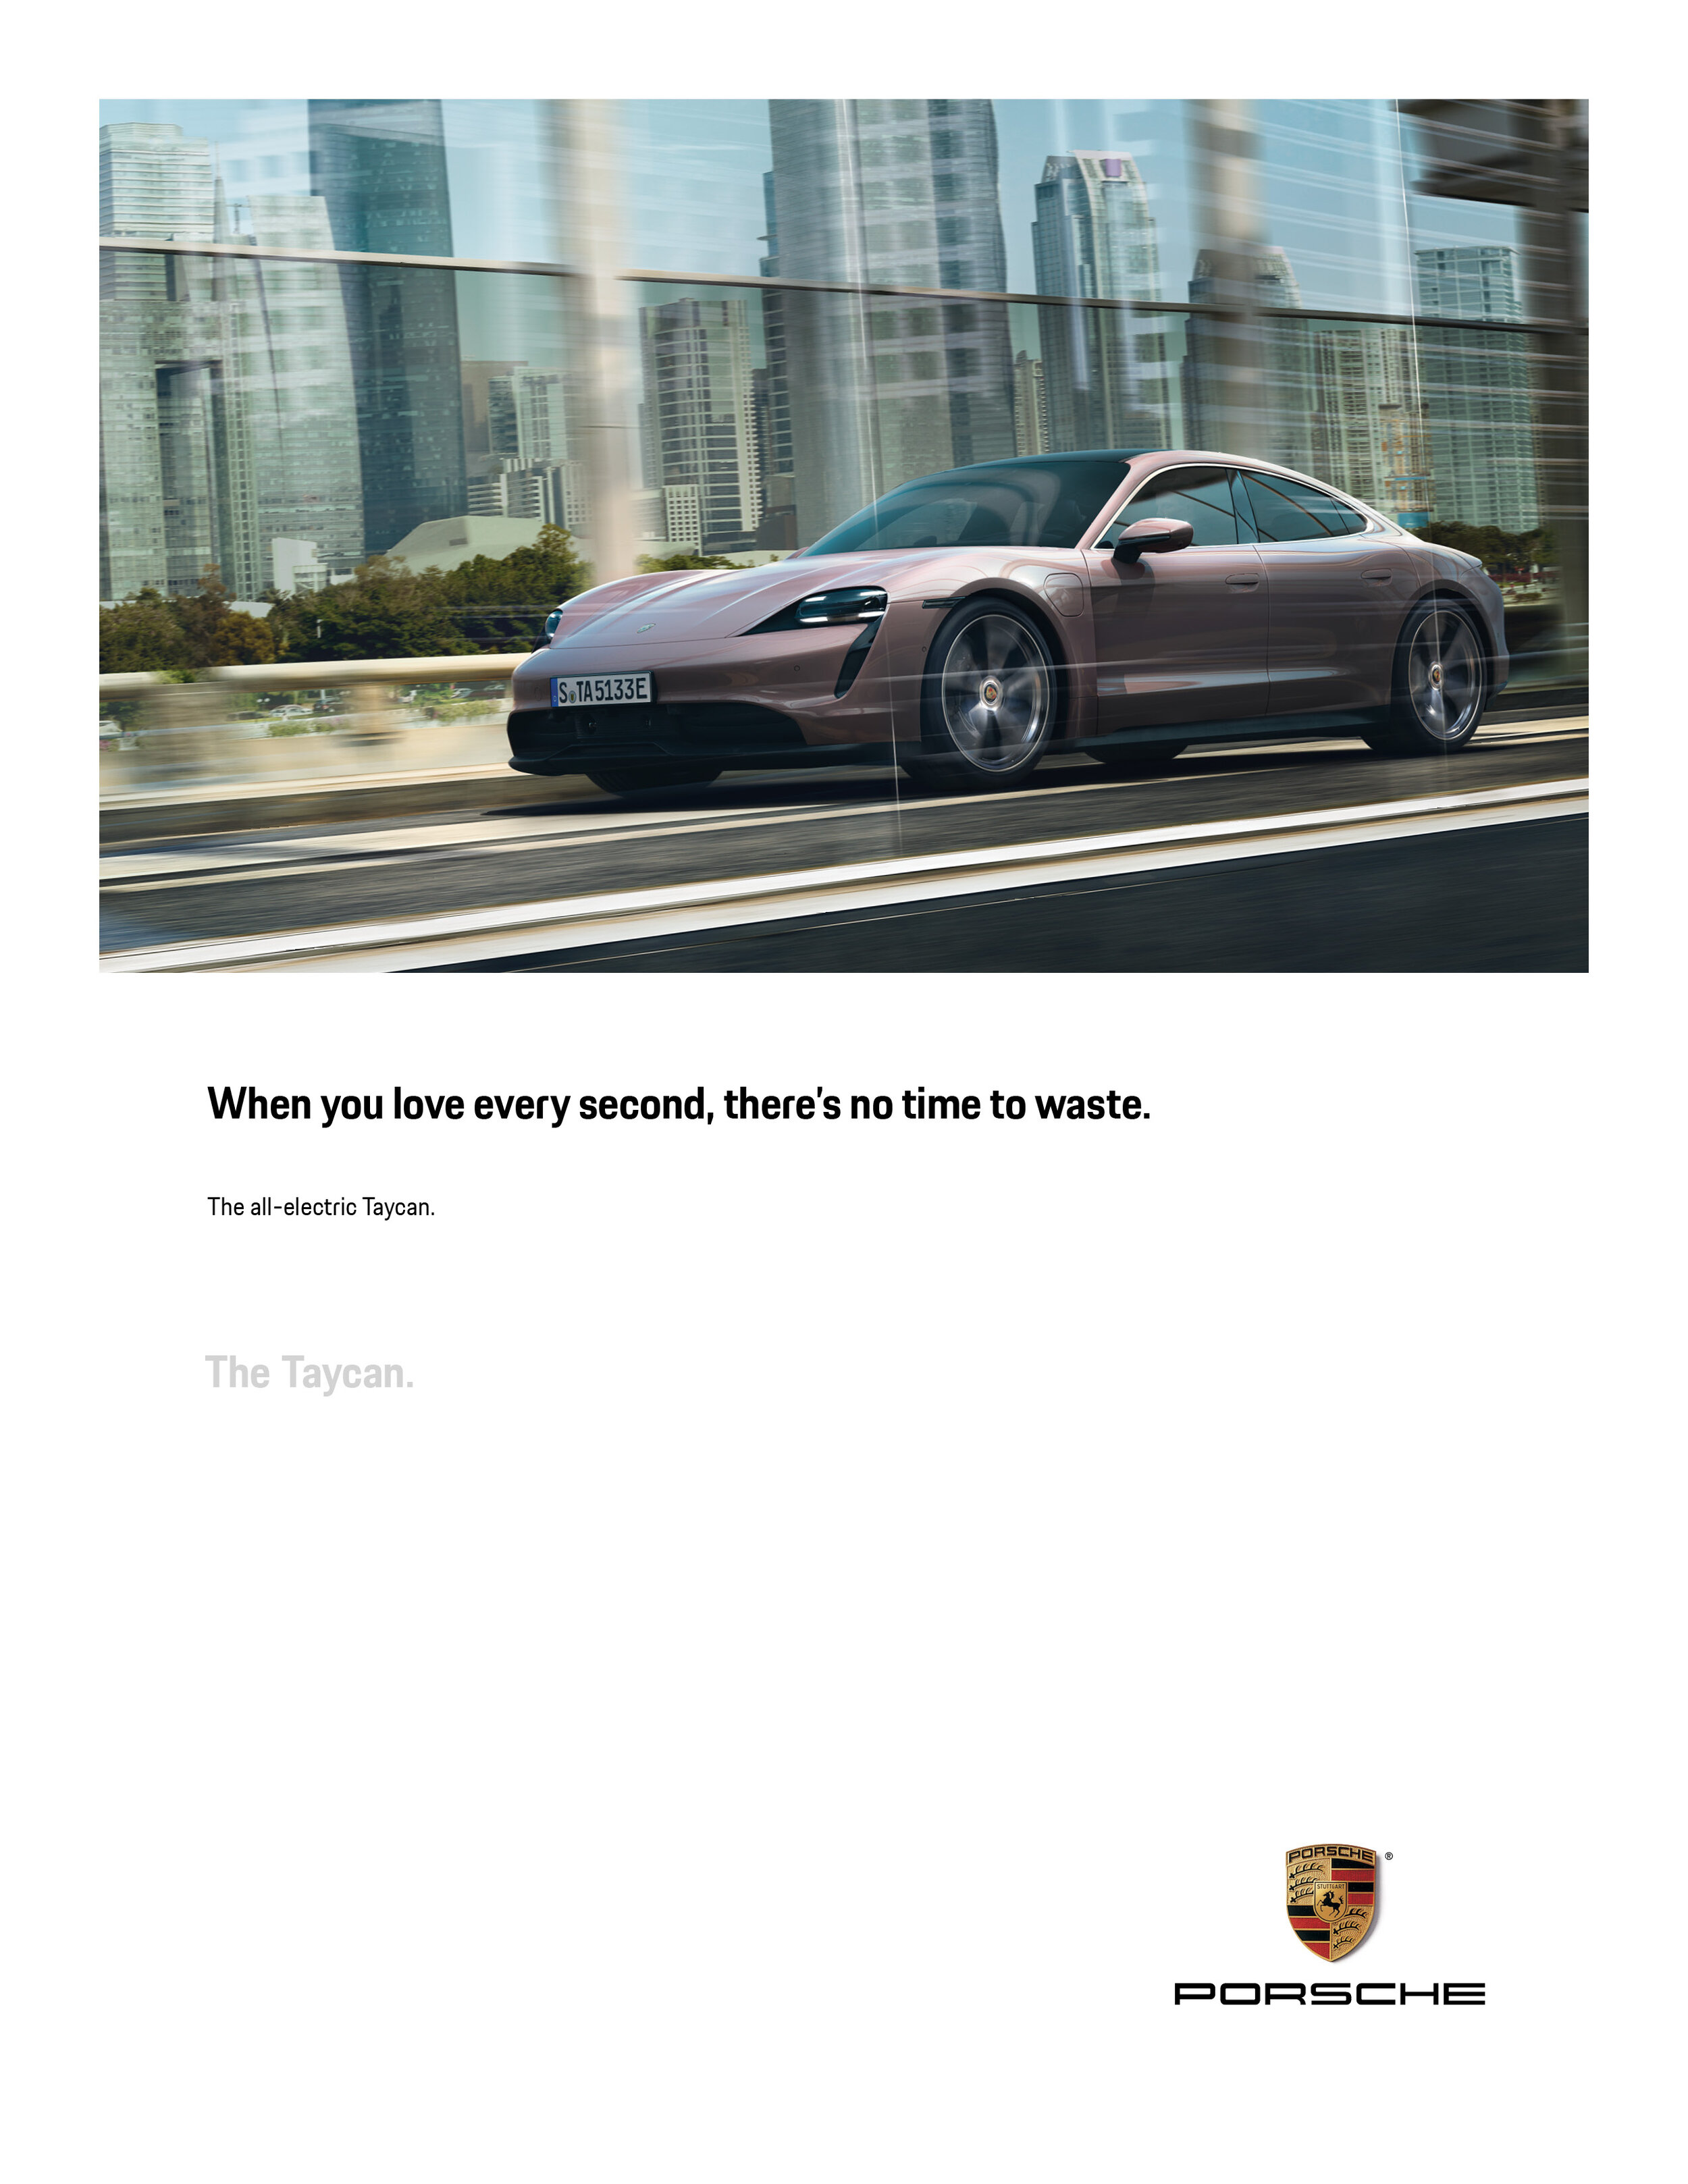 Porsche-Print9.jpg